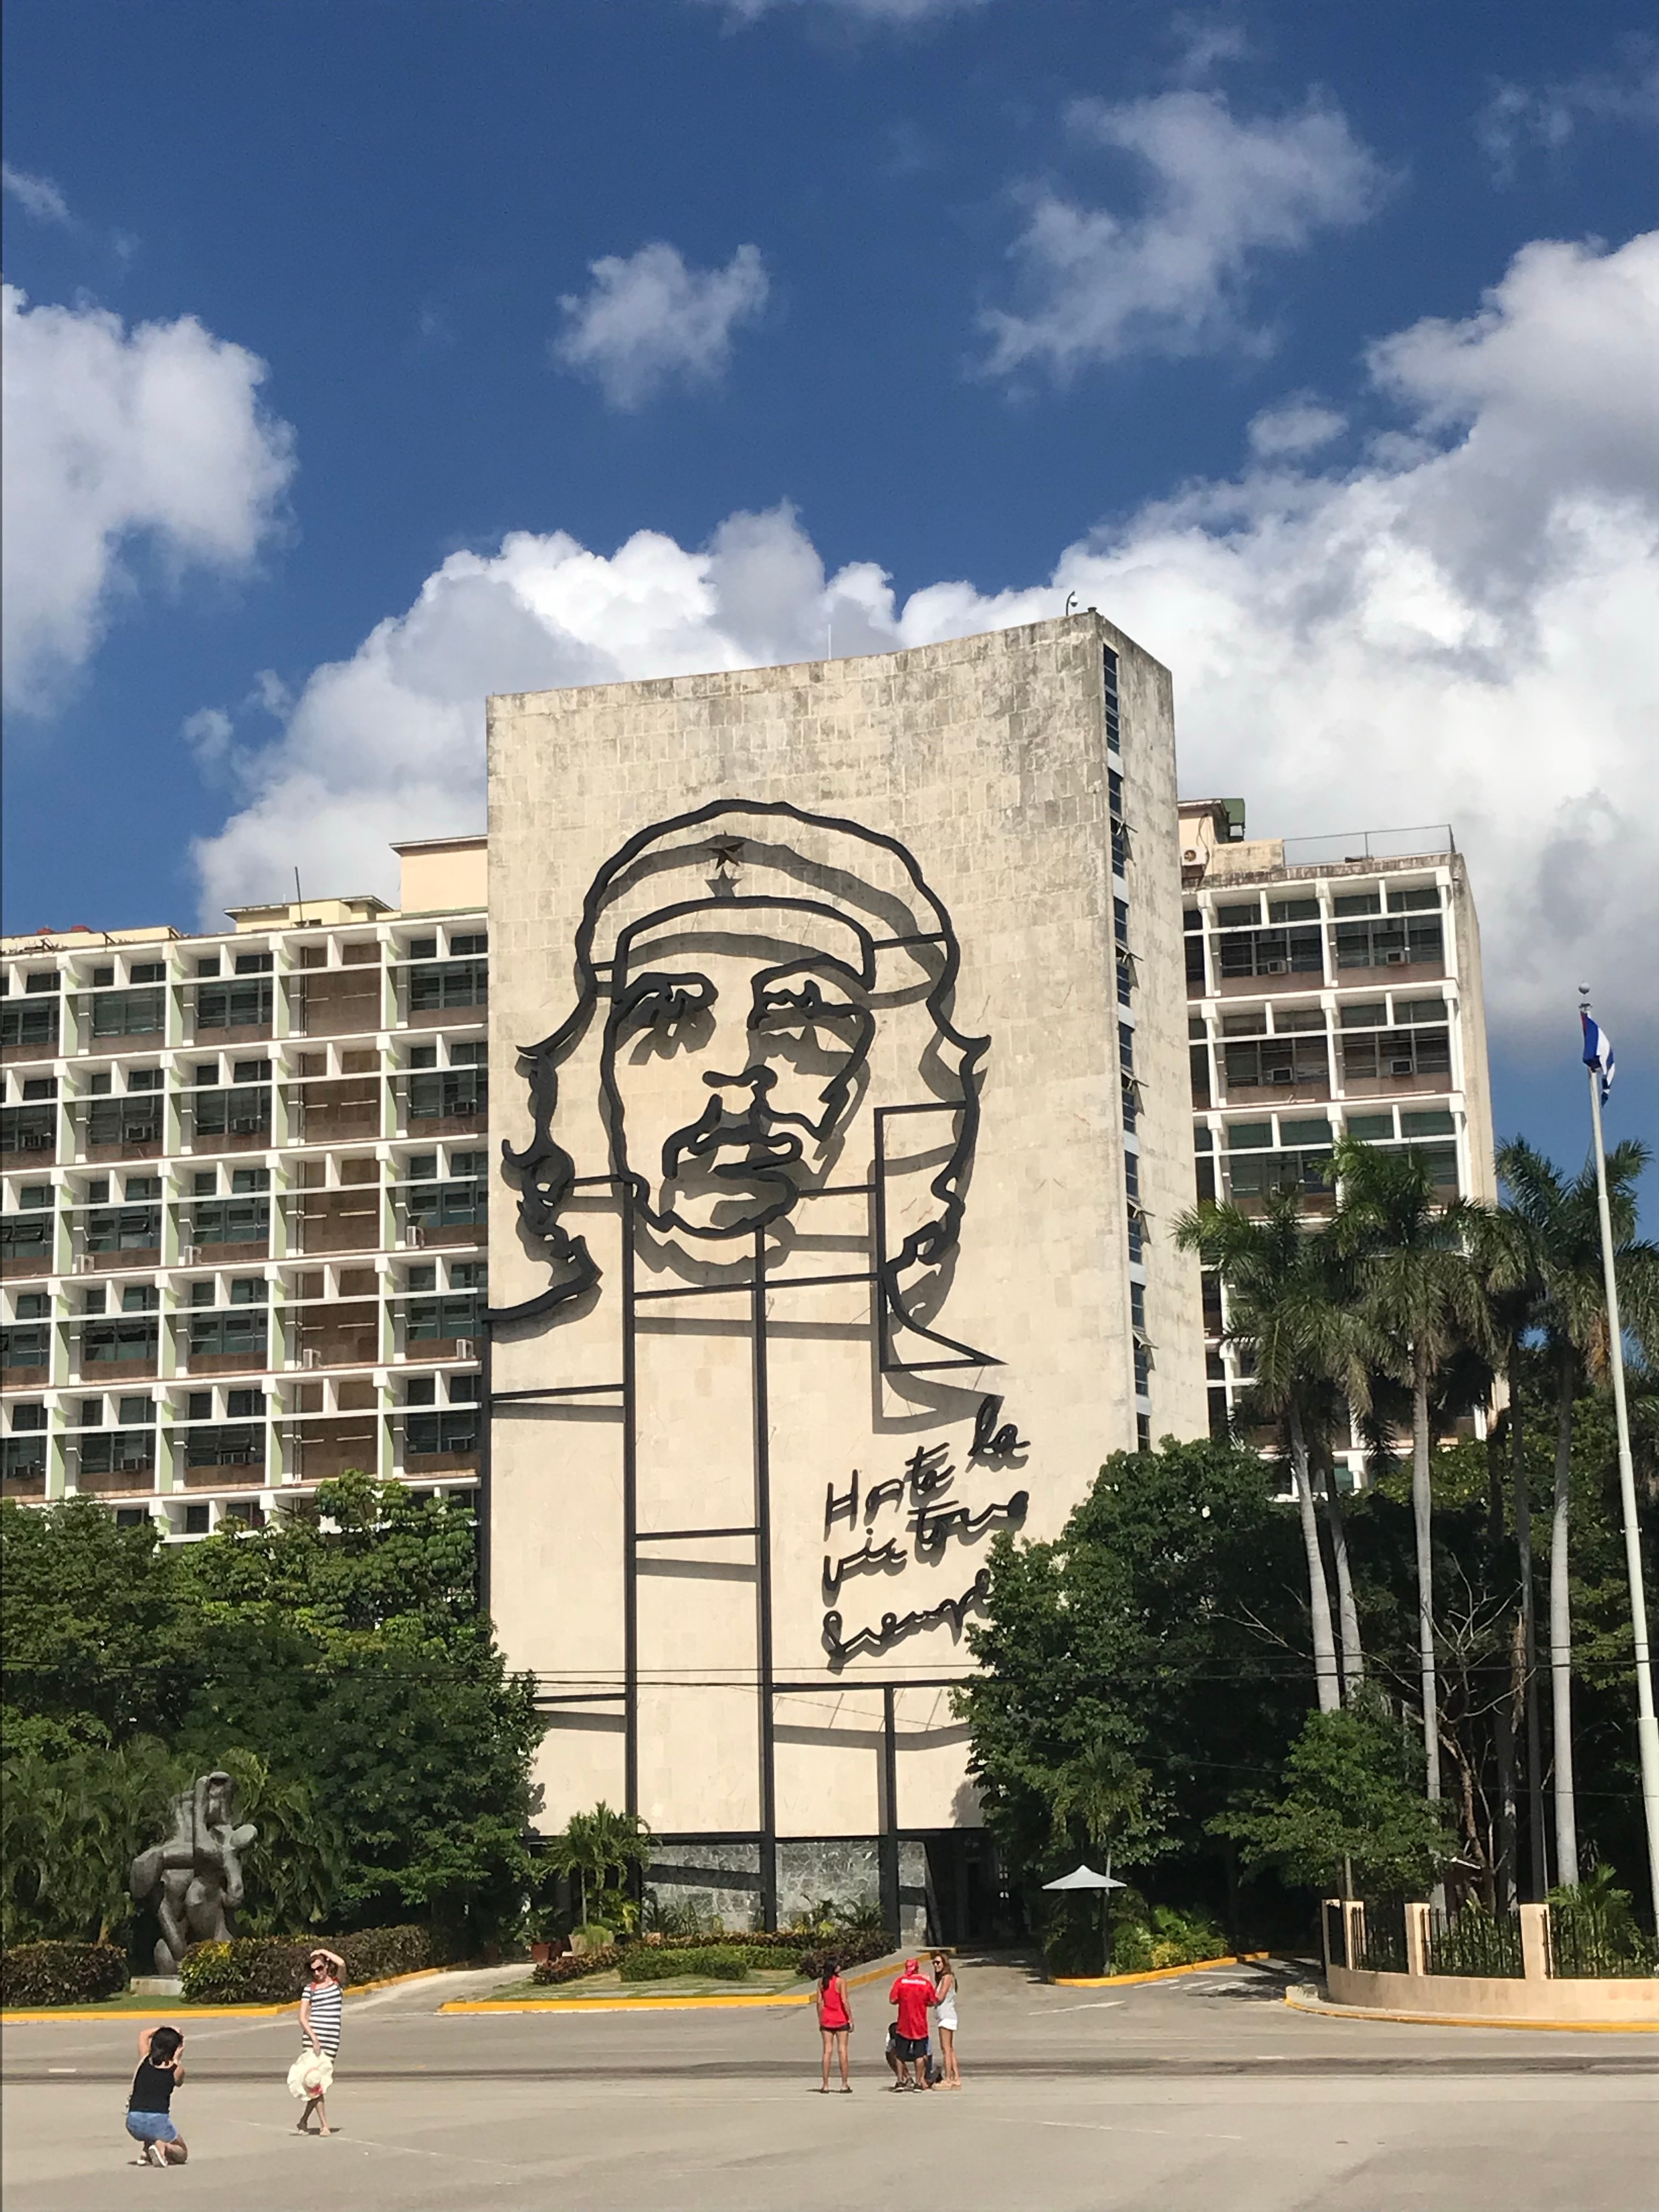 H I S ハバナ 美術館 博物館を巡る歴史ツアーハバナ キューバ のオプショナルツアー 海外現地ツアー格安予約